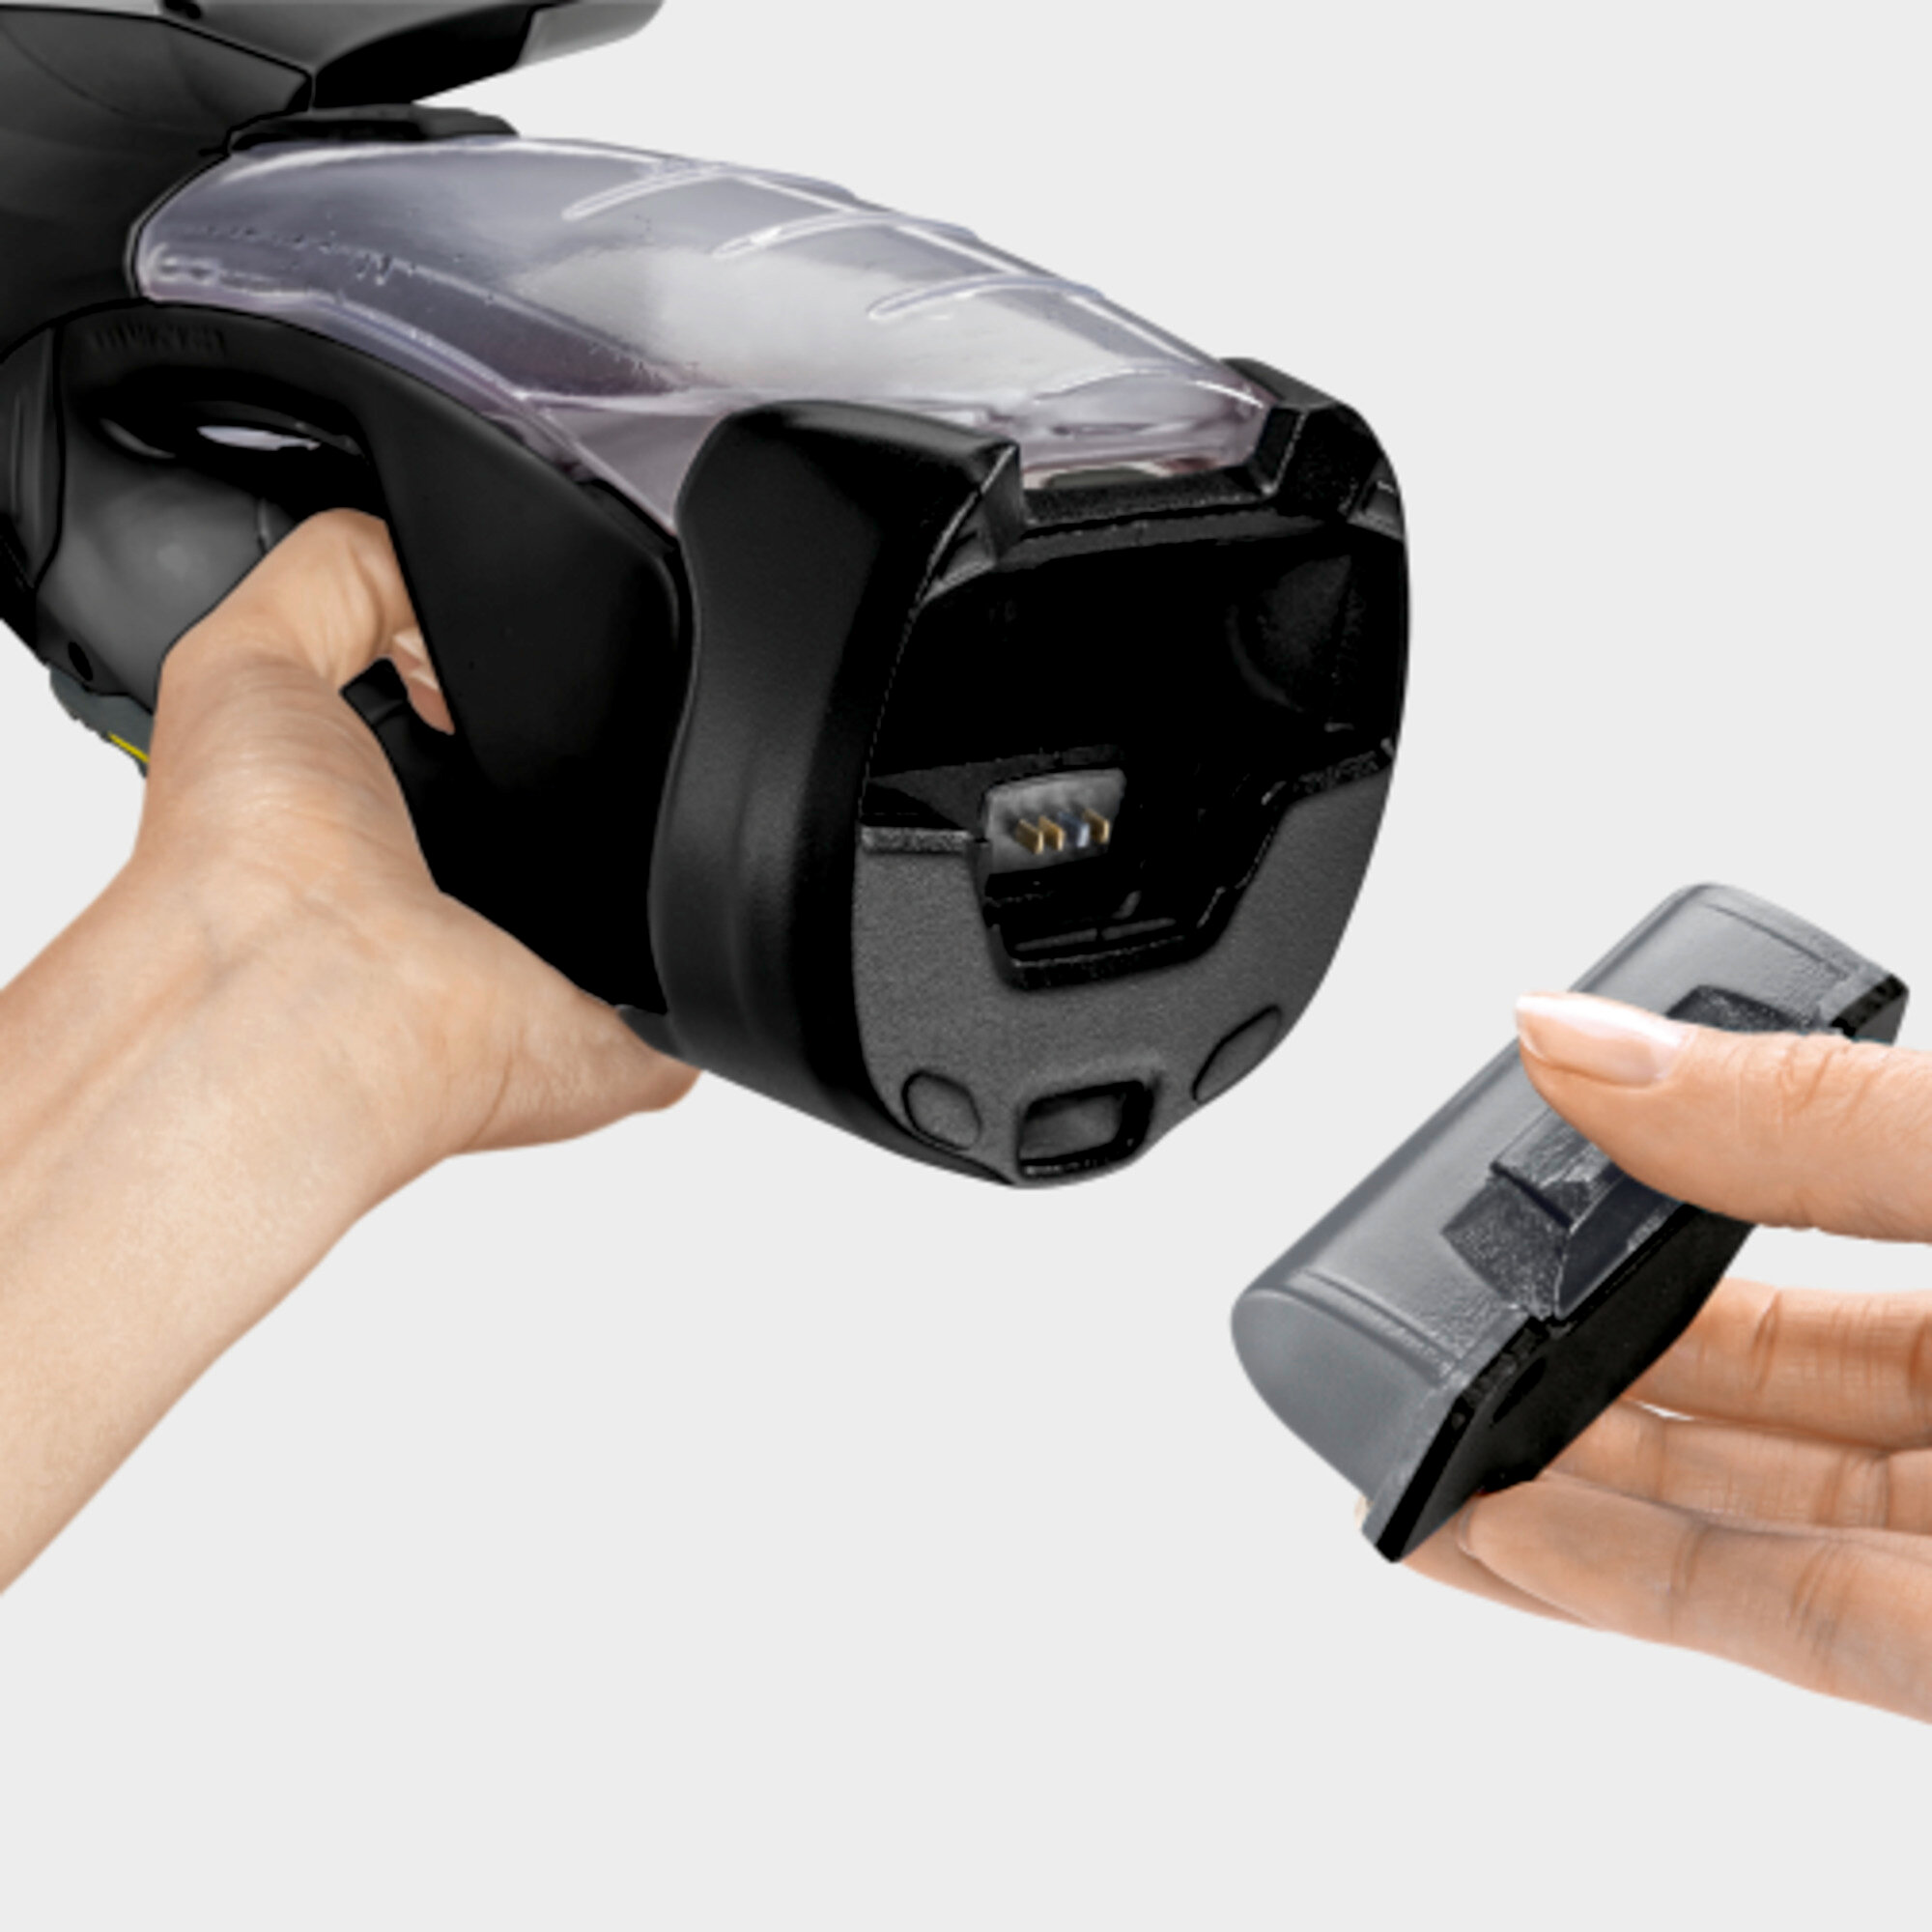 Şarjlı Cam Temizleme WV 5 Plus N Black Edıtıon Şarjlı Cam Temizleme Makinesi: Çıkarılabilir akü